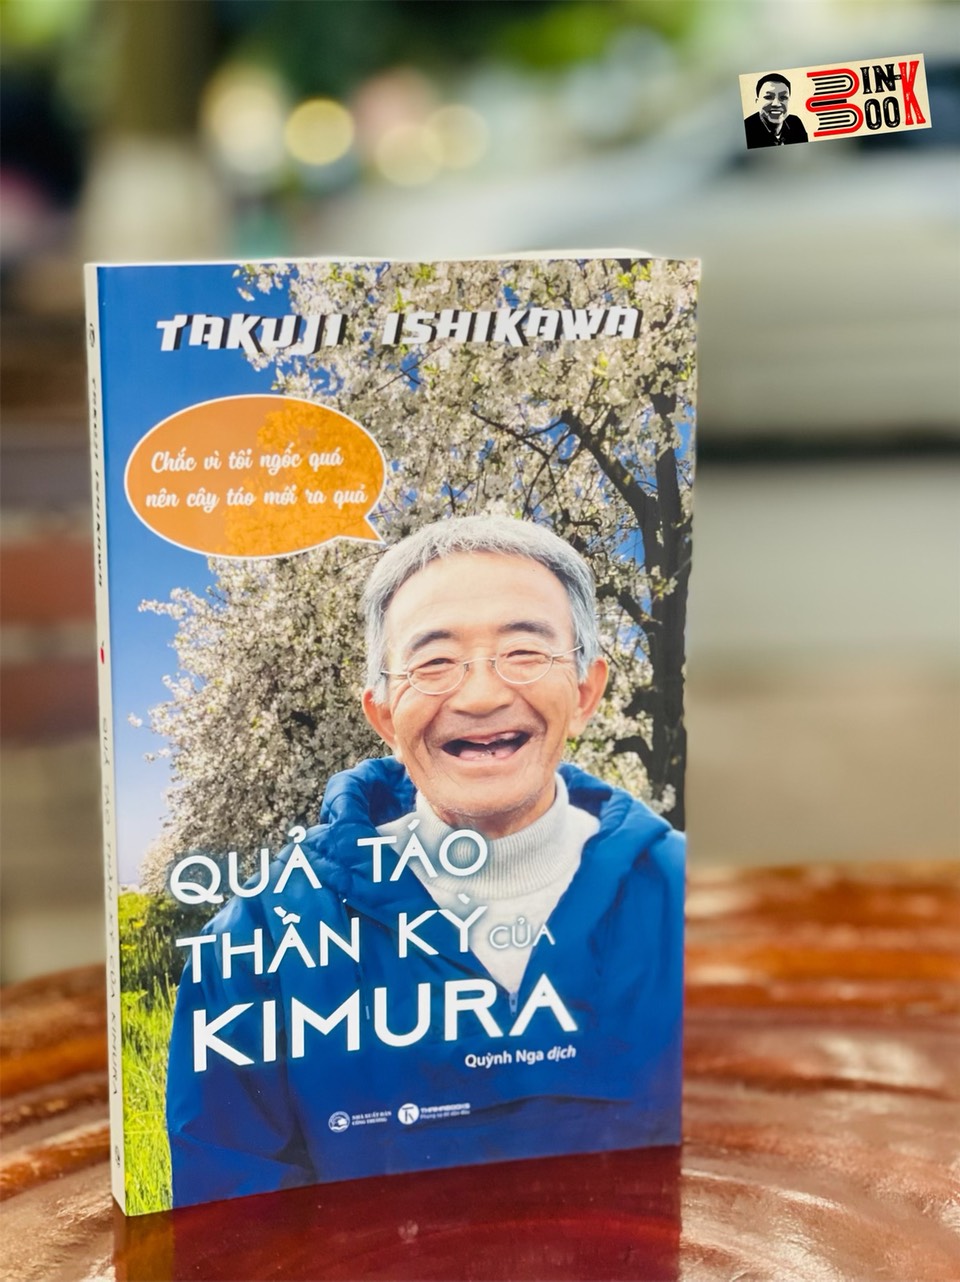 QUẢ TÁO THẦN KỲ CỦA KIMURA - Ichikawa Takuji – Quỳnh Nga dịch – Thái Hà books – NXB Công Thương (Bìa mềm)